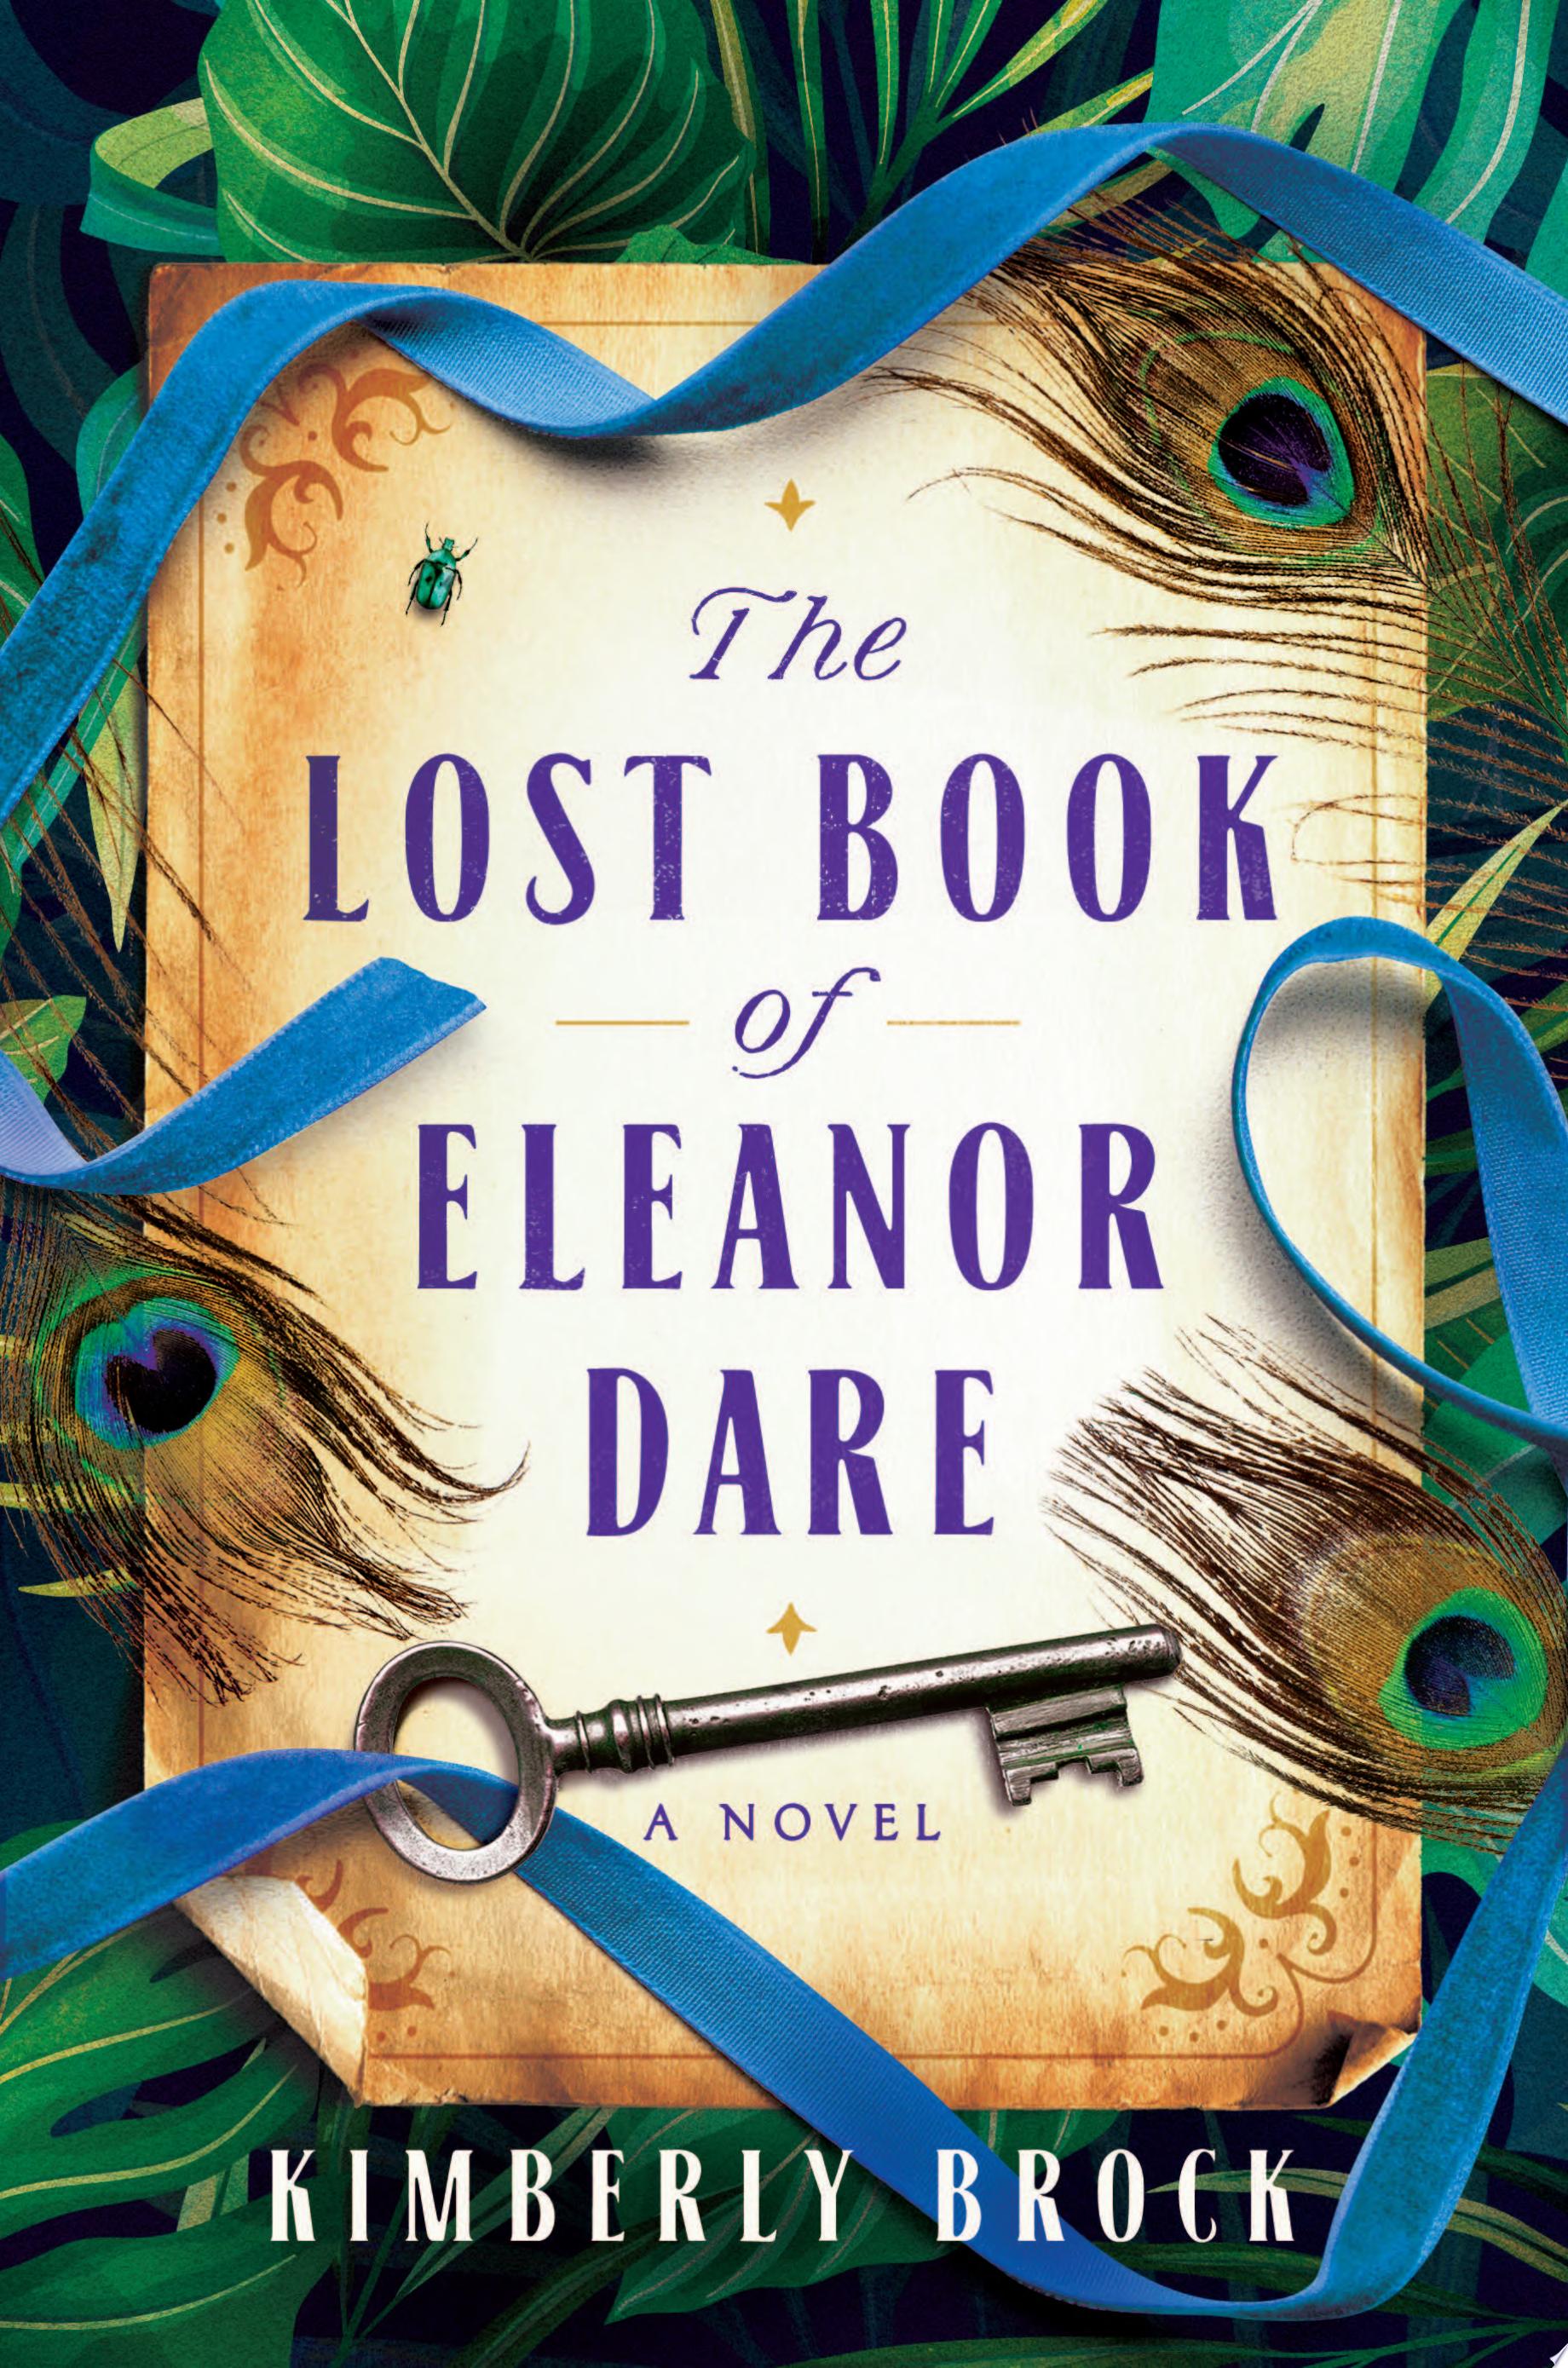 Image for "The Lost Book of Eleanor Dare"